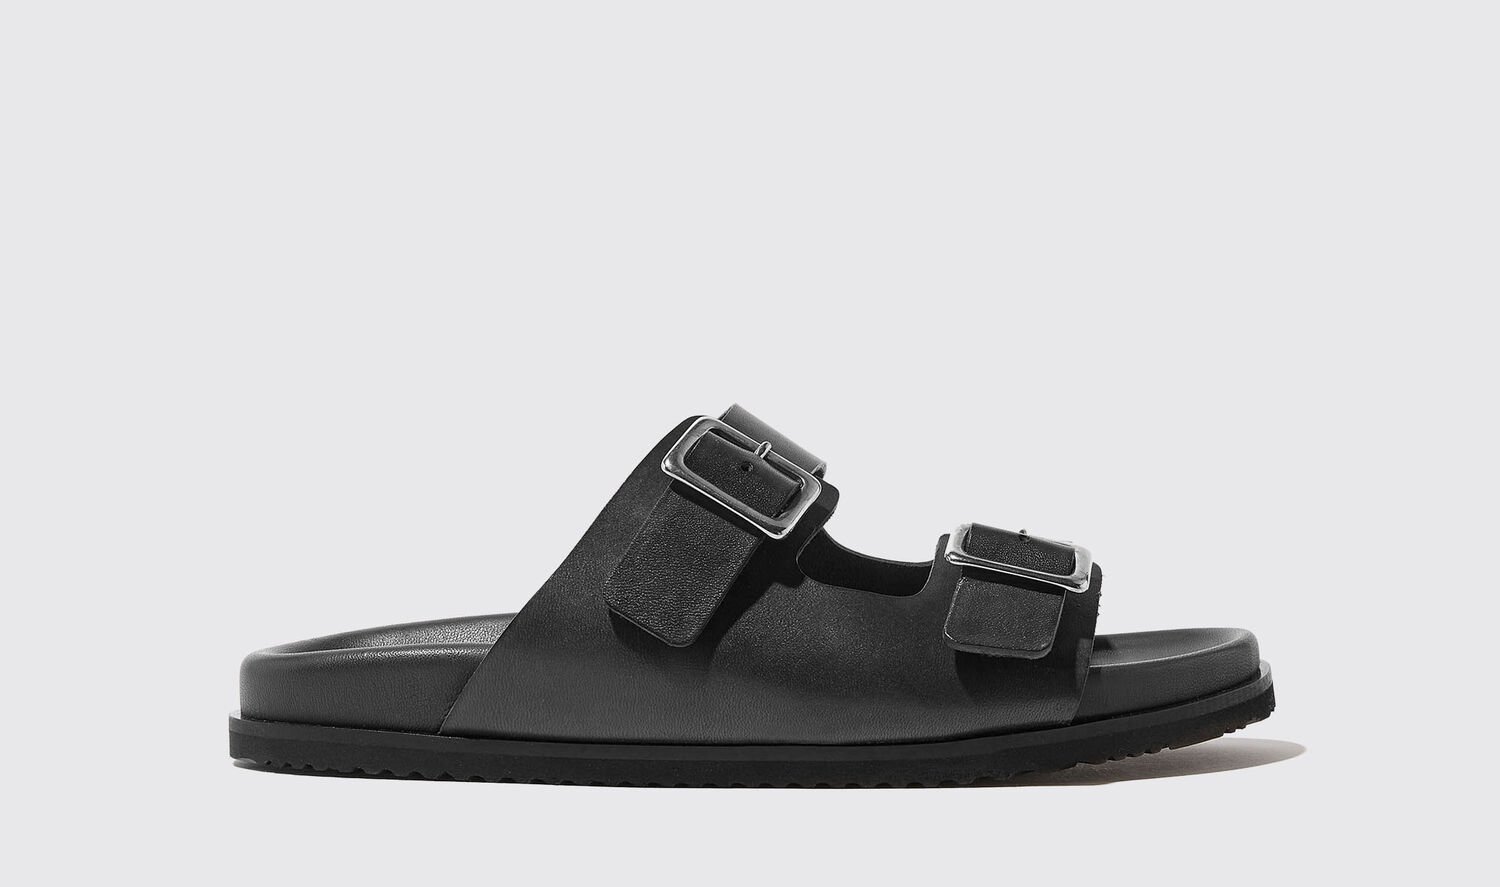 Scarosso Sandals Lavina Nera Calf Leather In Black - Calf